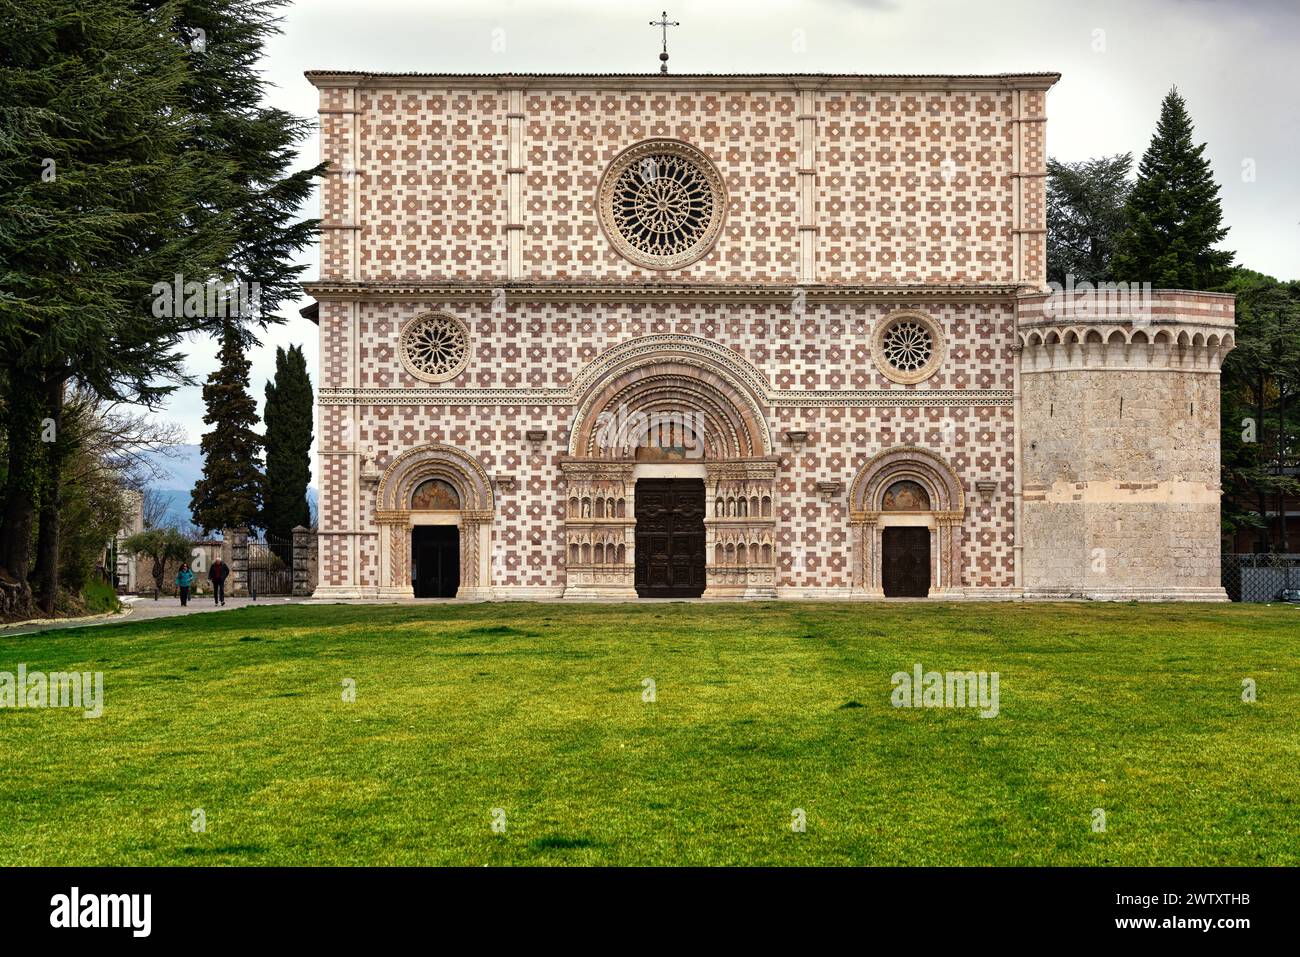 Die Fassade der Basilika Santa Maria di Collemaggio ist im romanisch-gotischen Stil gehalten. L'Aquila, Abruzzen, Italien, Europa Stockfoto